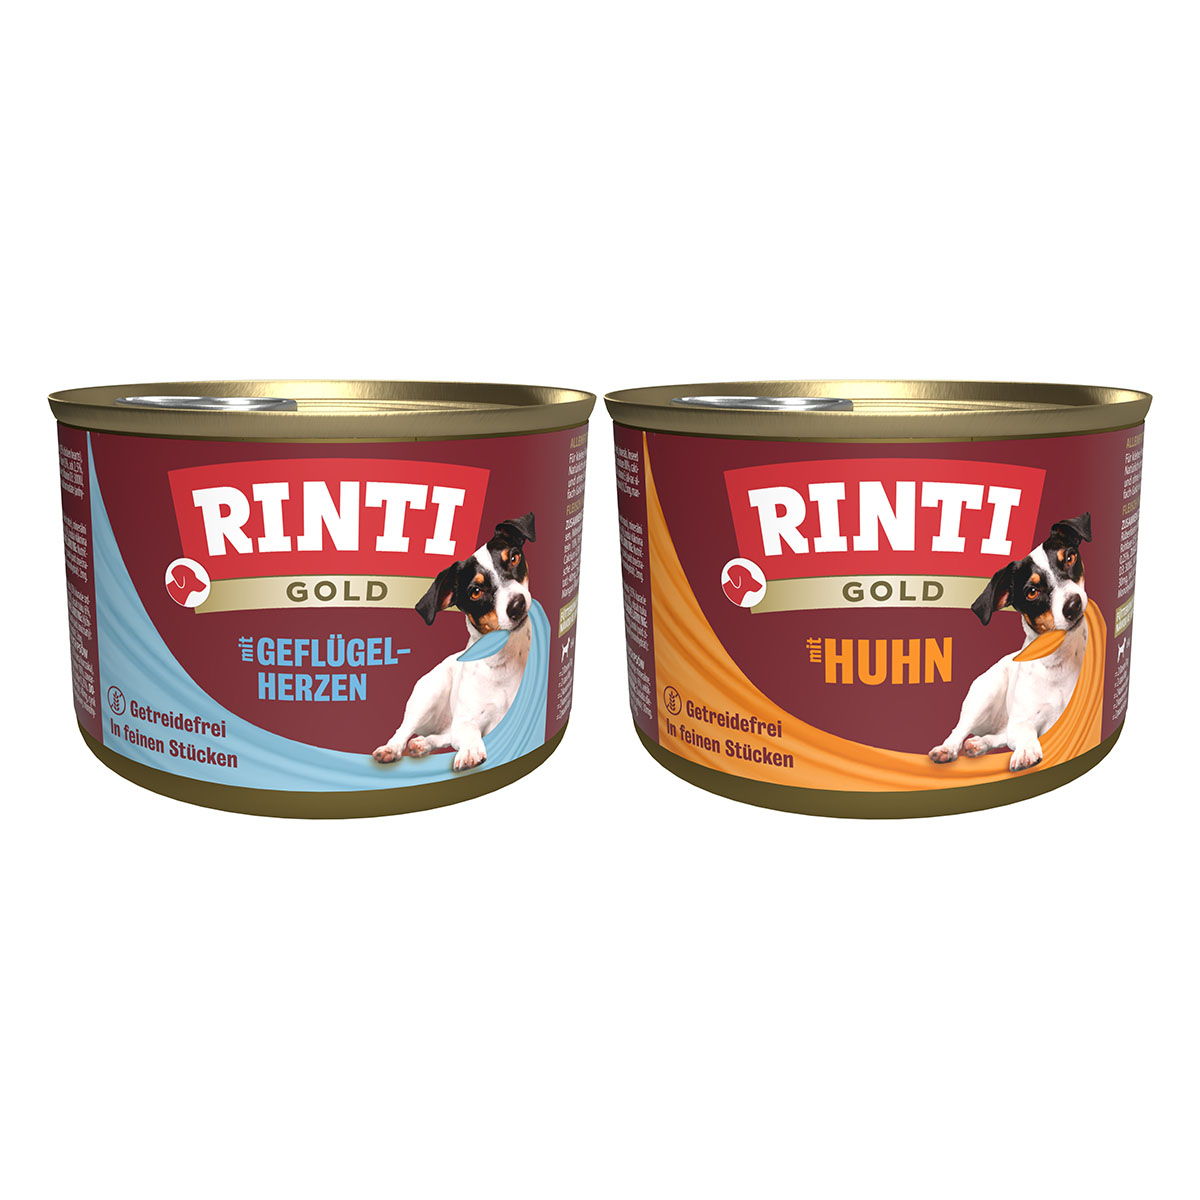 Rinti Gold Mixpaket mit Geflügelherzen & Huhn 24x185g von Rinti